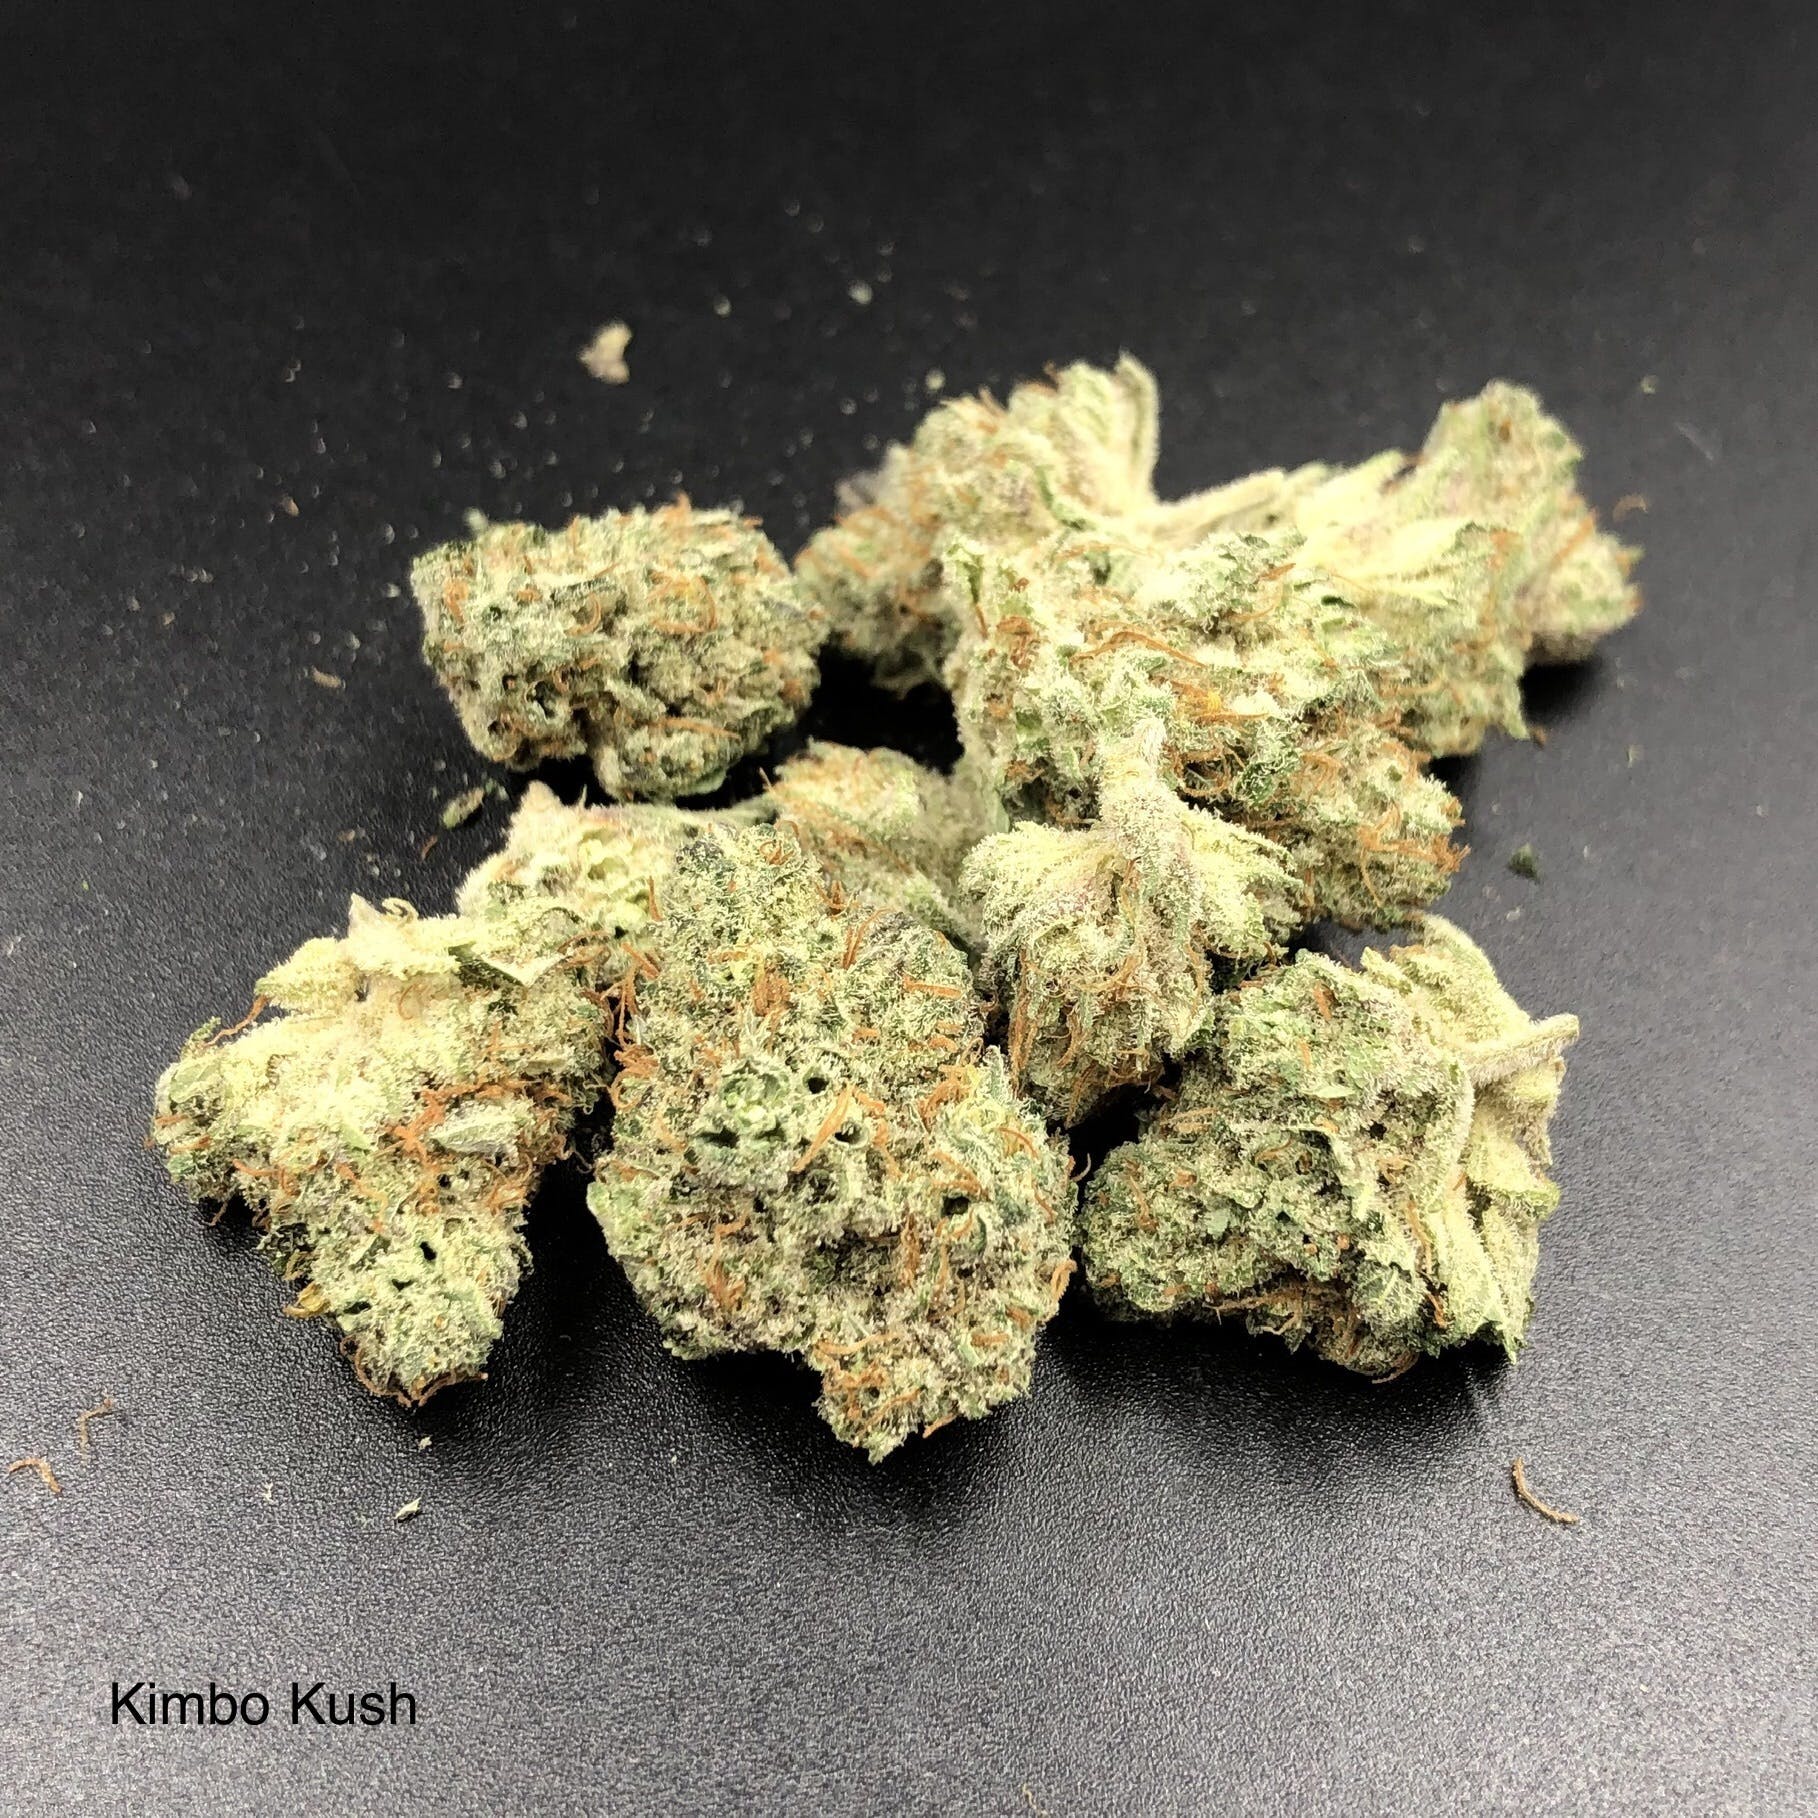 marijuana-dispensaries-chronic-pain-releaf-center-in-long-beach-710-labs-kimbo-kush